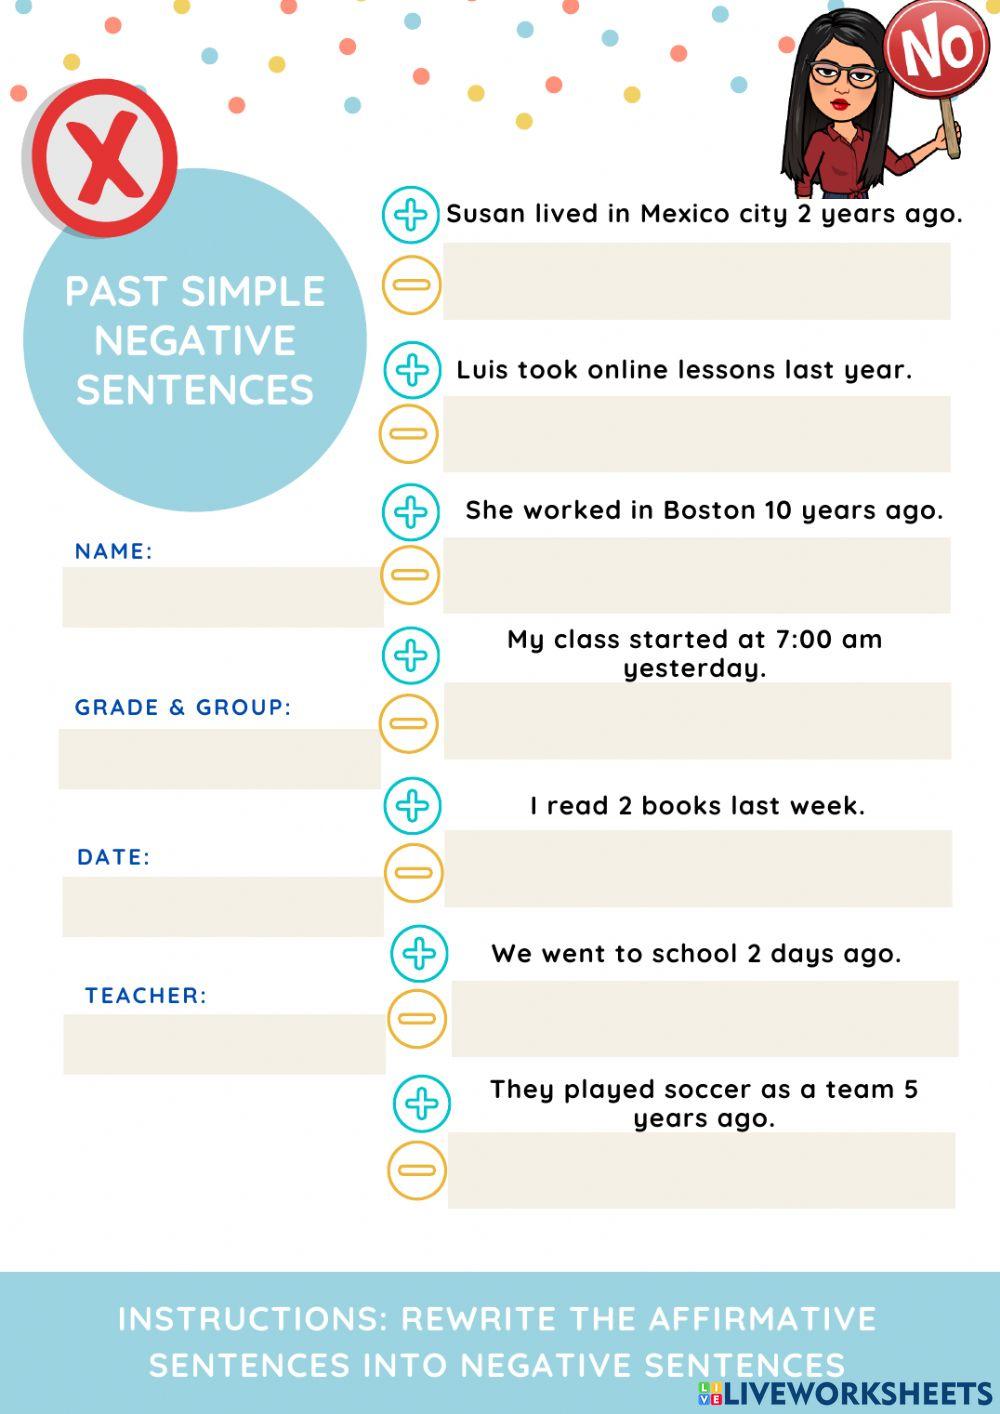 Negative sentences past simple